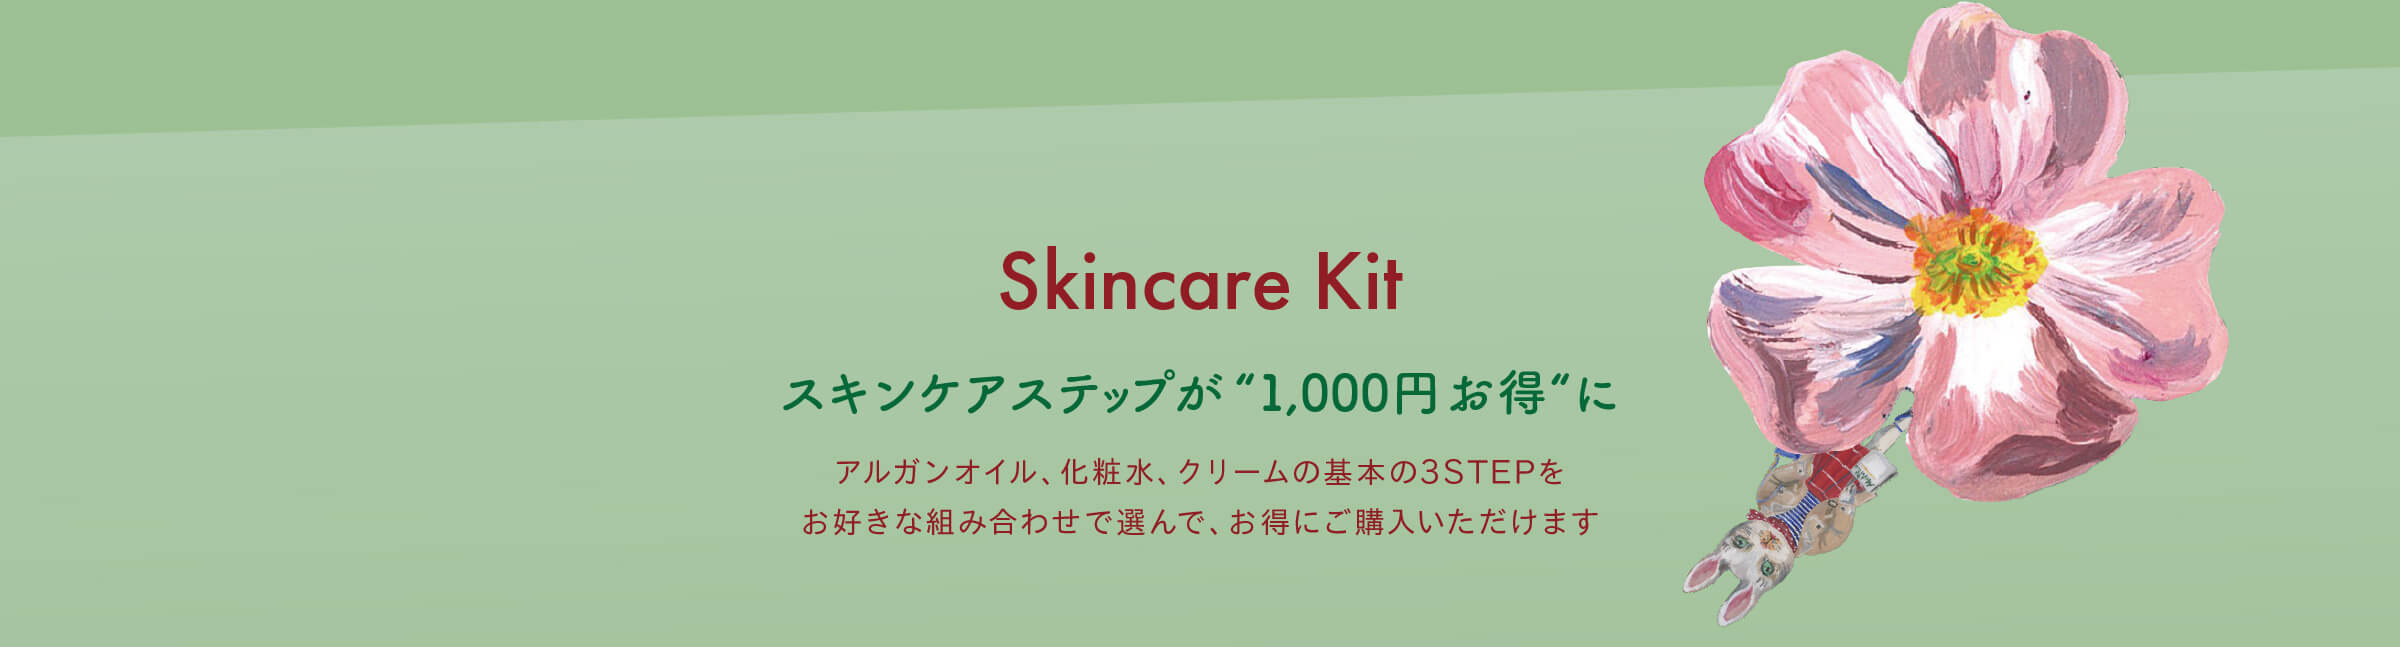 Skincare Kit